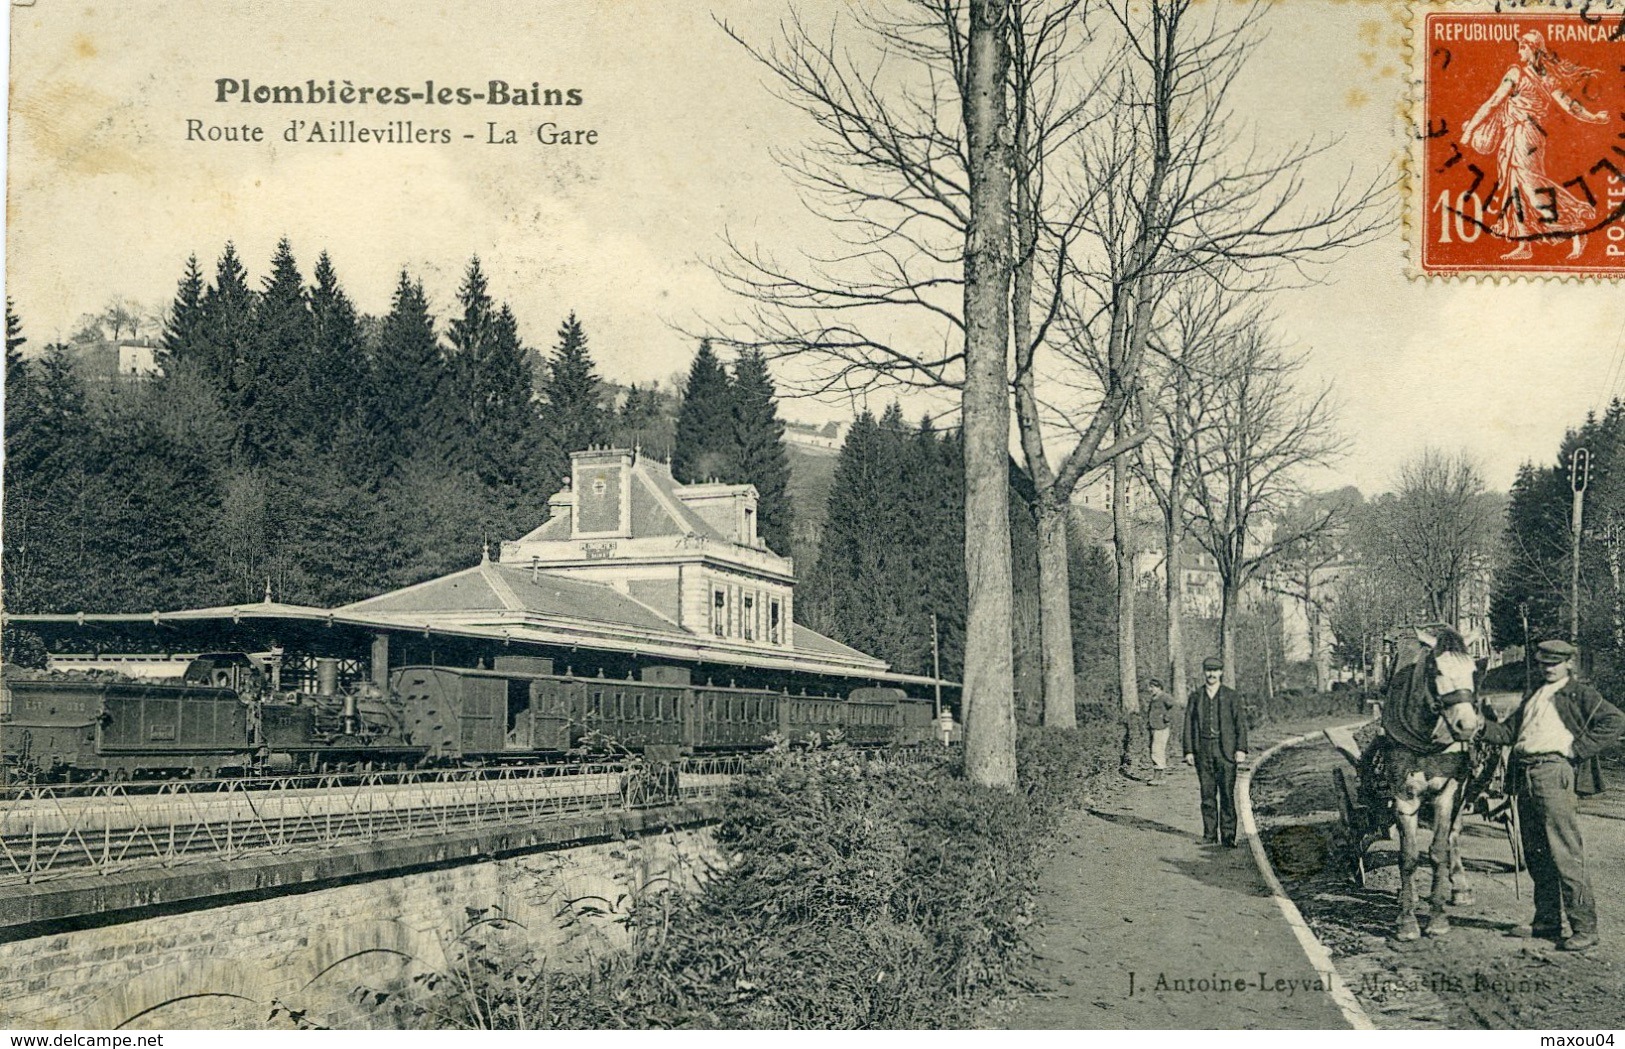 PLOMBIERES Les BAINS - Route D'Aillevillers - La Gare - Plombieres Les Bains